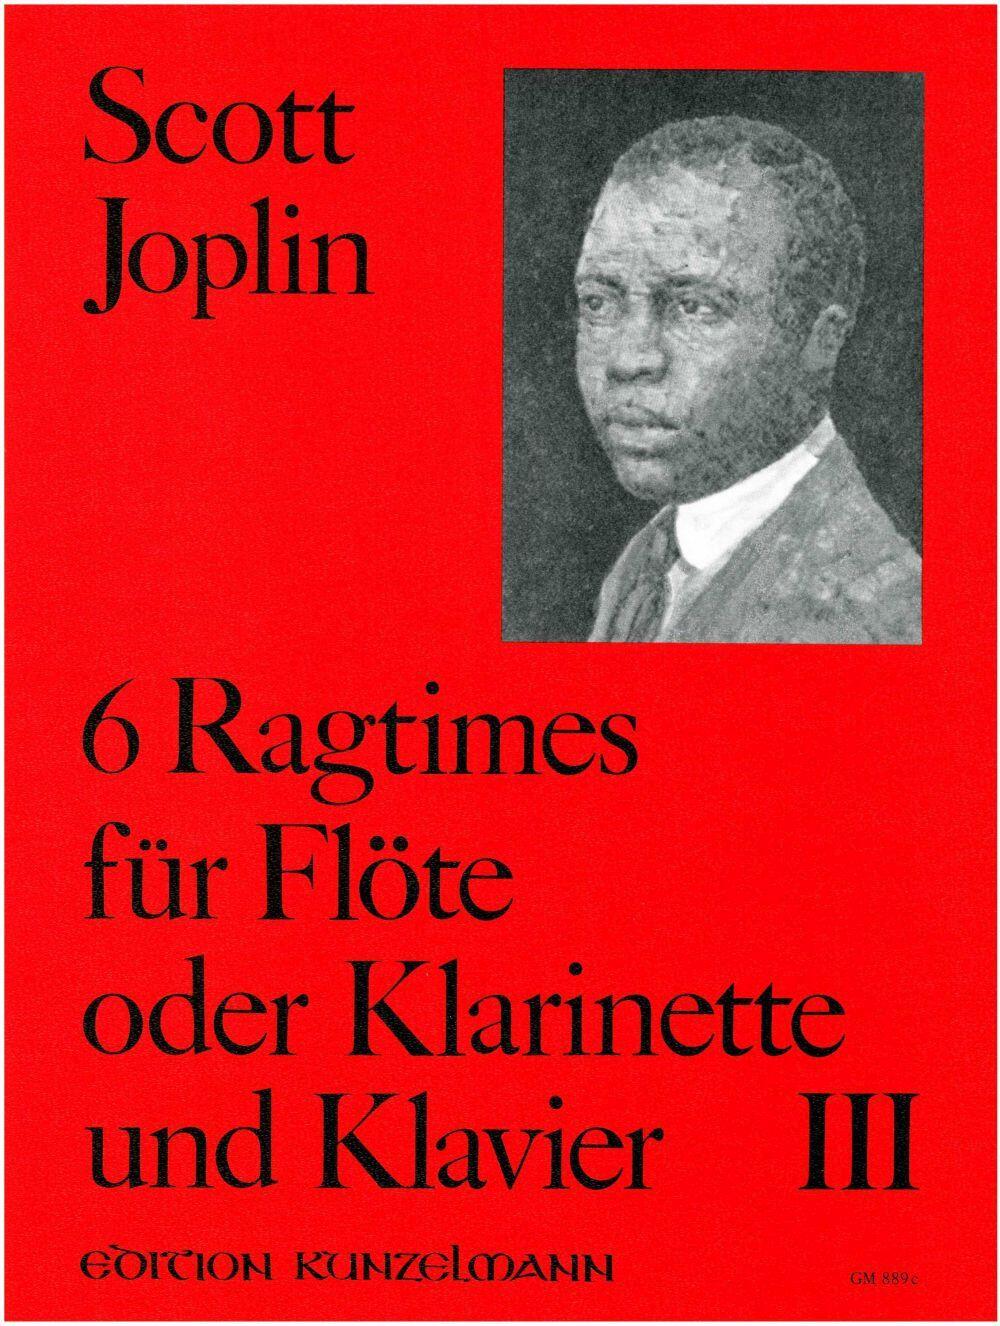 6 Ragtimes Für Flöte und Klavier - Band III Scott Joplin  Flöte und Klavier Buch  GM-889C : photo 1